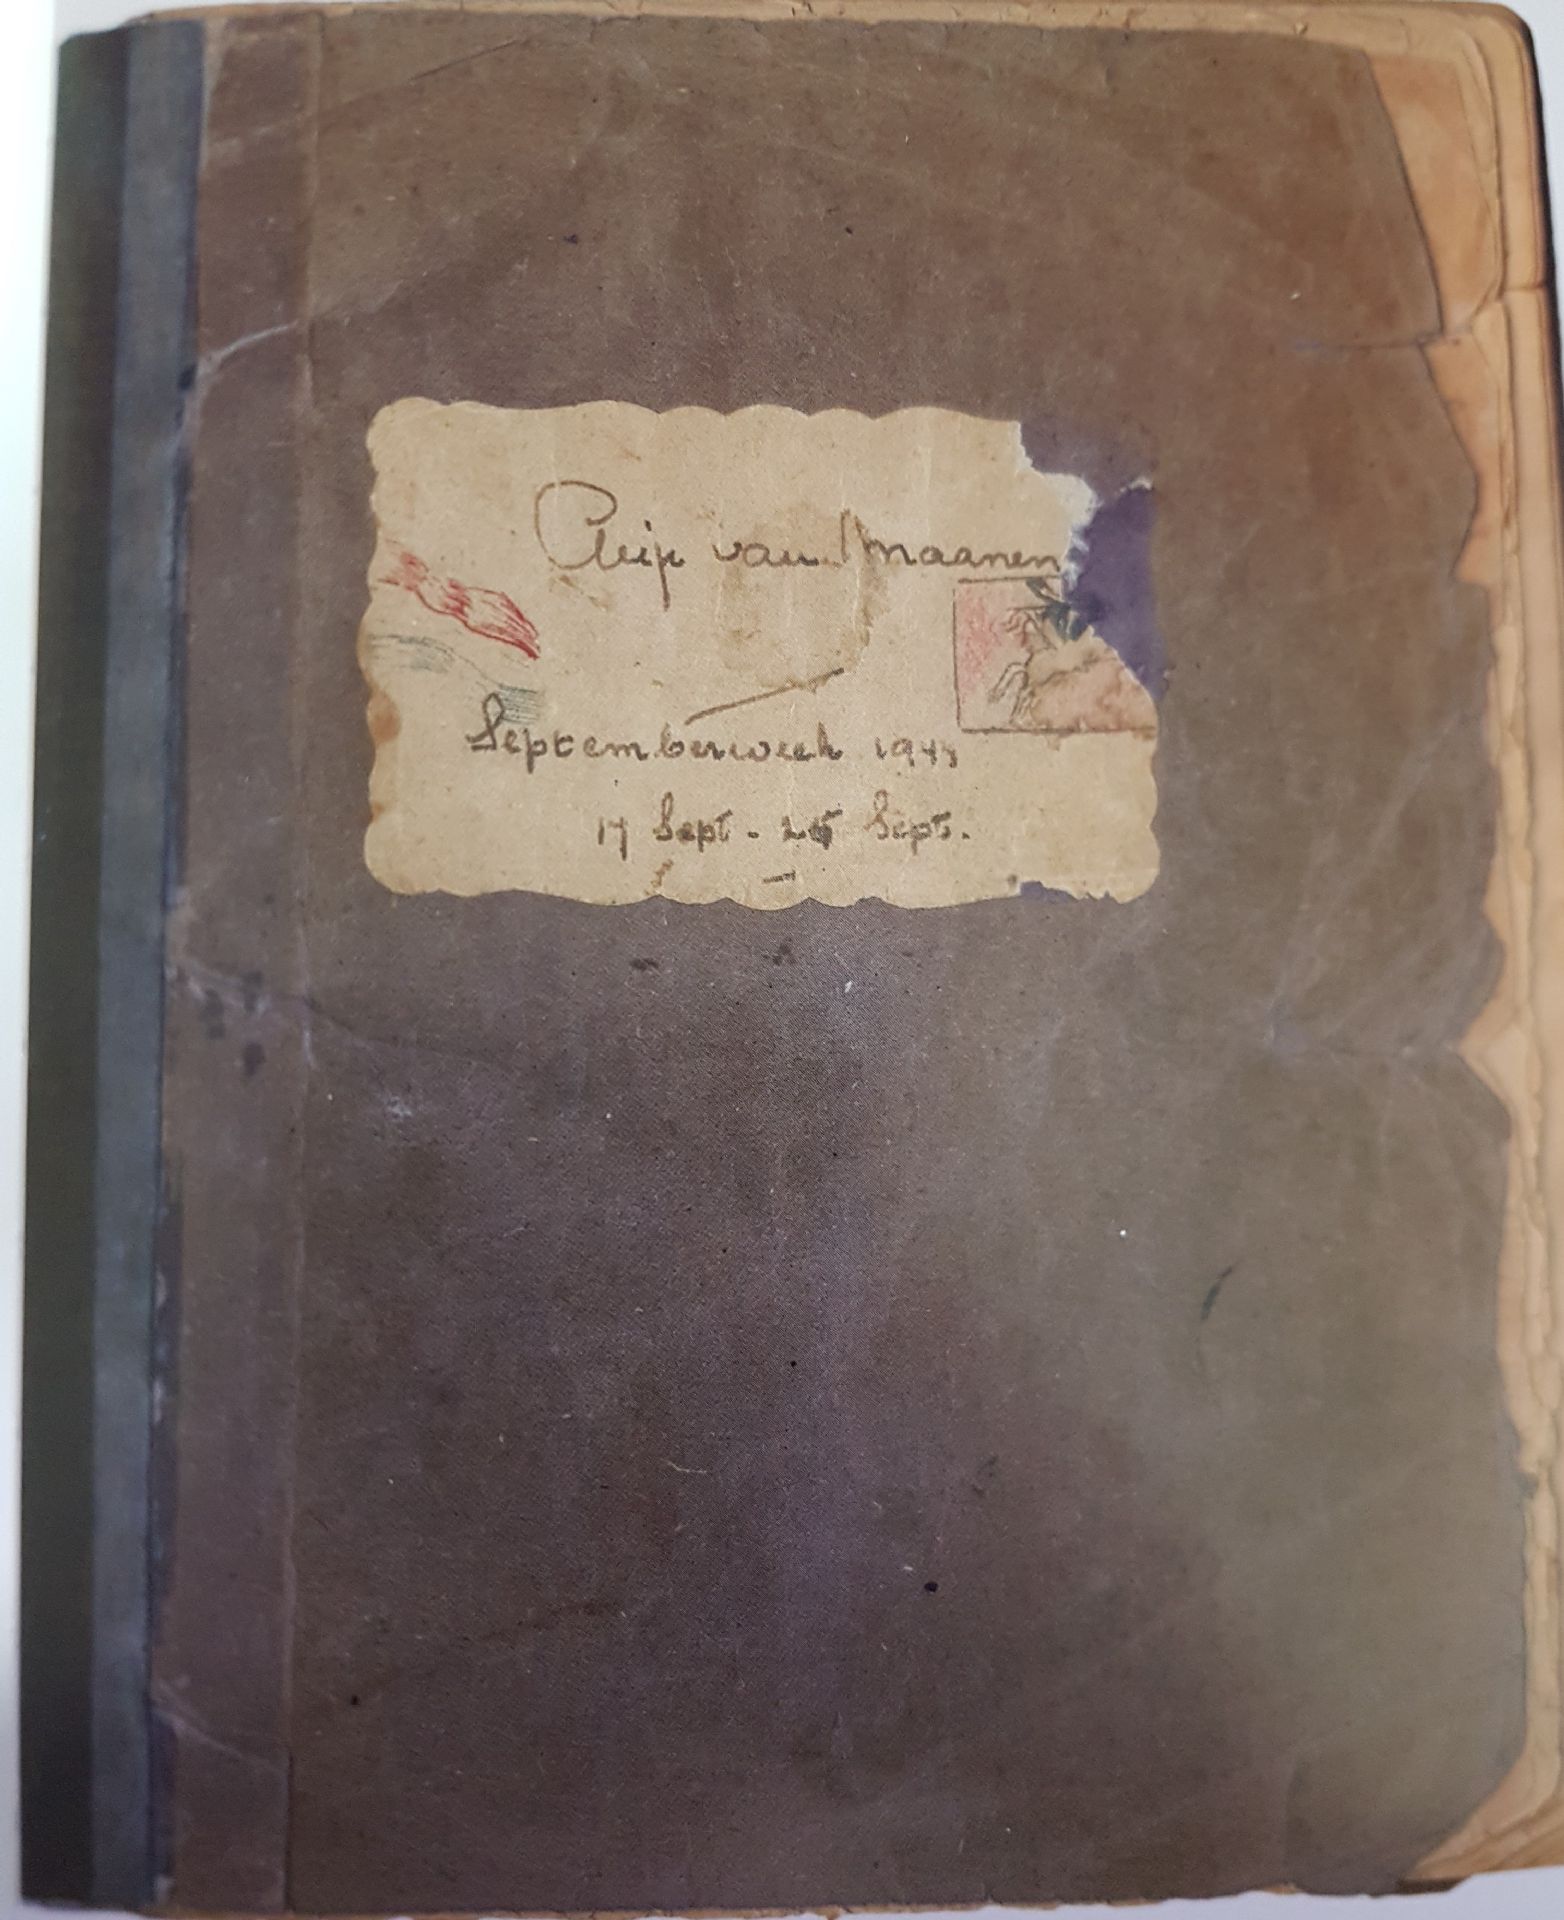 Felix, Anje en Trees schreven in hun dagboeken wat ze hebben meegemaakt tijdens WO II.
Heb jij wel eens een dagboek bijgehouden? Waar vertel je dan over?